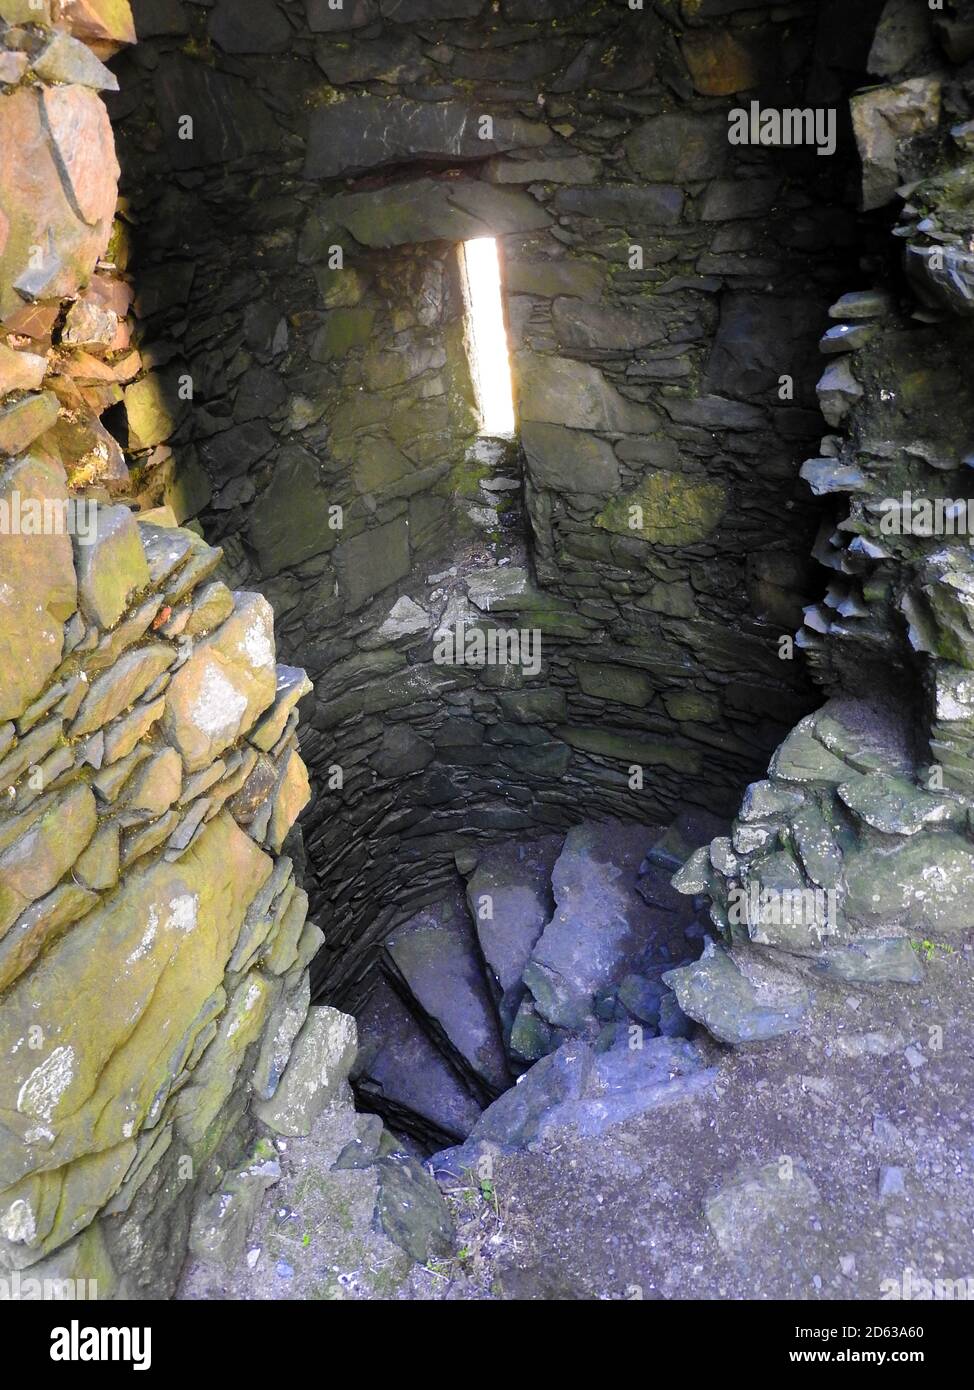 Oct 2020 -Obere der Innentreppe im Dunskey Castle in der Nähe von Portpatrick Schottland. Portpatrick ist die geplante Endstation für eine geplante Tunnel- oder Brückenverbindung nach Larne in Irland. Stockfoto